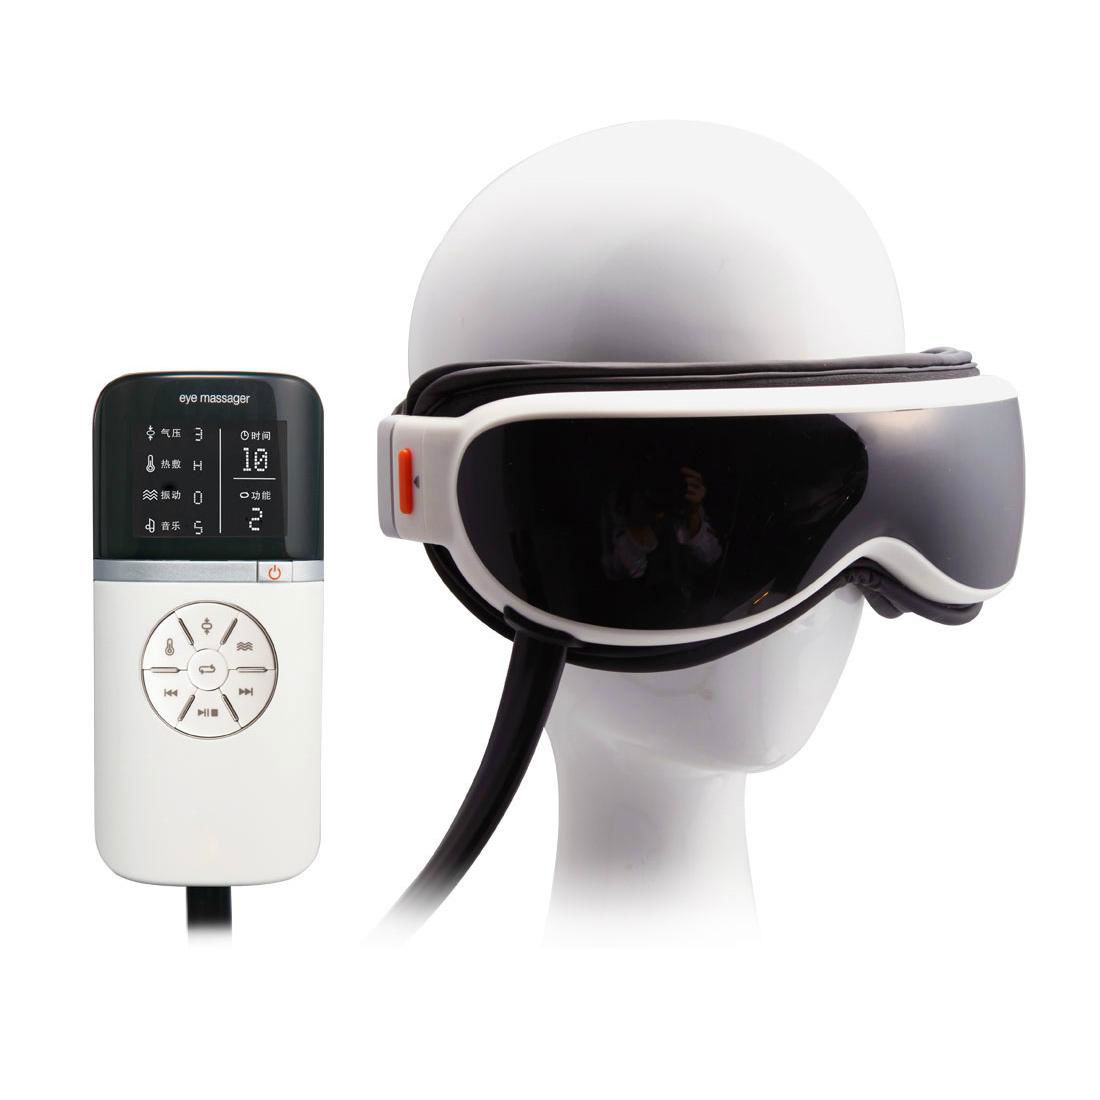    RT-E01 Luxury Multi-functional Infrared Eye Massager 5